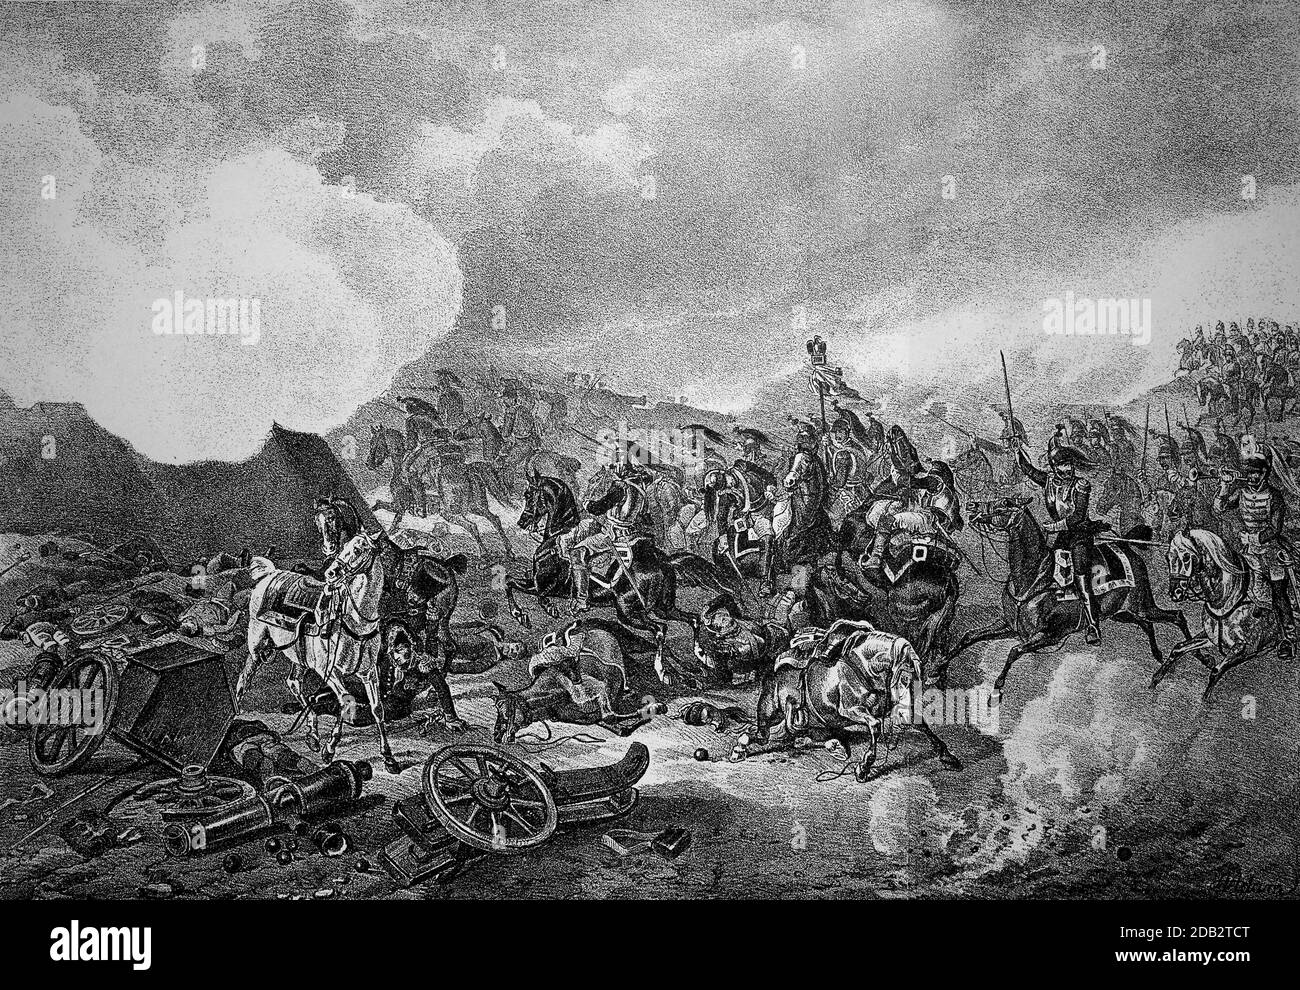 Battaglia di Borodino, Battaglia di Moschaisk, Battaglia di Moskva, fu una battaglia della campagna napoleonica russa. Il 7 settembre 1812 la Grande Armata francese guidata da Napoleone e l'esercito russo sotto il generale Kutuzov combatté una delle battaglie più sanguinose del XIX secolo a Borodino. Qui la tempesta del grande redoubt / Schlacht bei Borodino, Schlacht bei Moschaisk, Schlacht an der Moskwa, eine di guerra Schlacht des napoleonischen Russlandfeldzuges. Am 7. Settembre 1812 lieferten sich bei Borodino die von Napoleon geführte französische Grande Armee und die russische Armee unter General Kutusow e Foto Stock